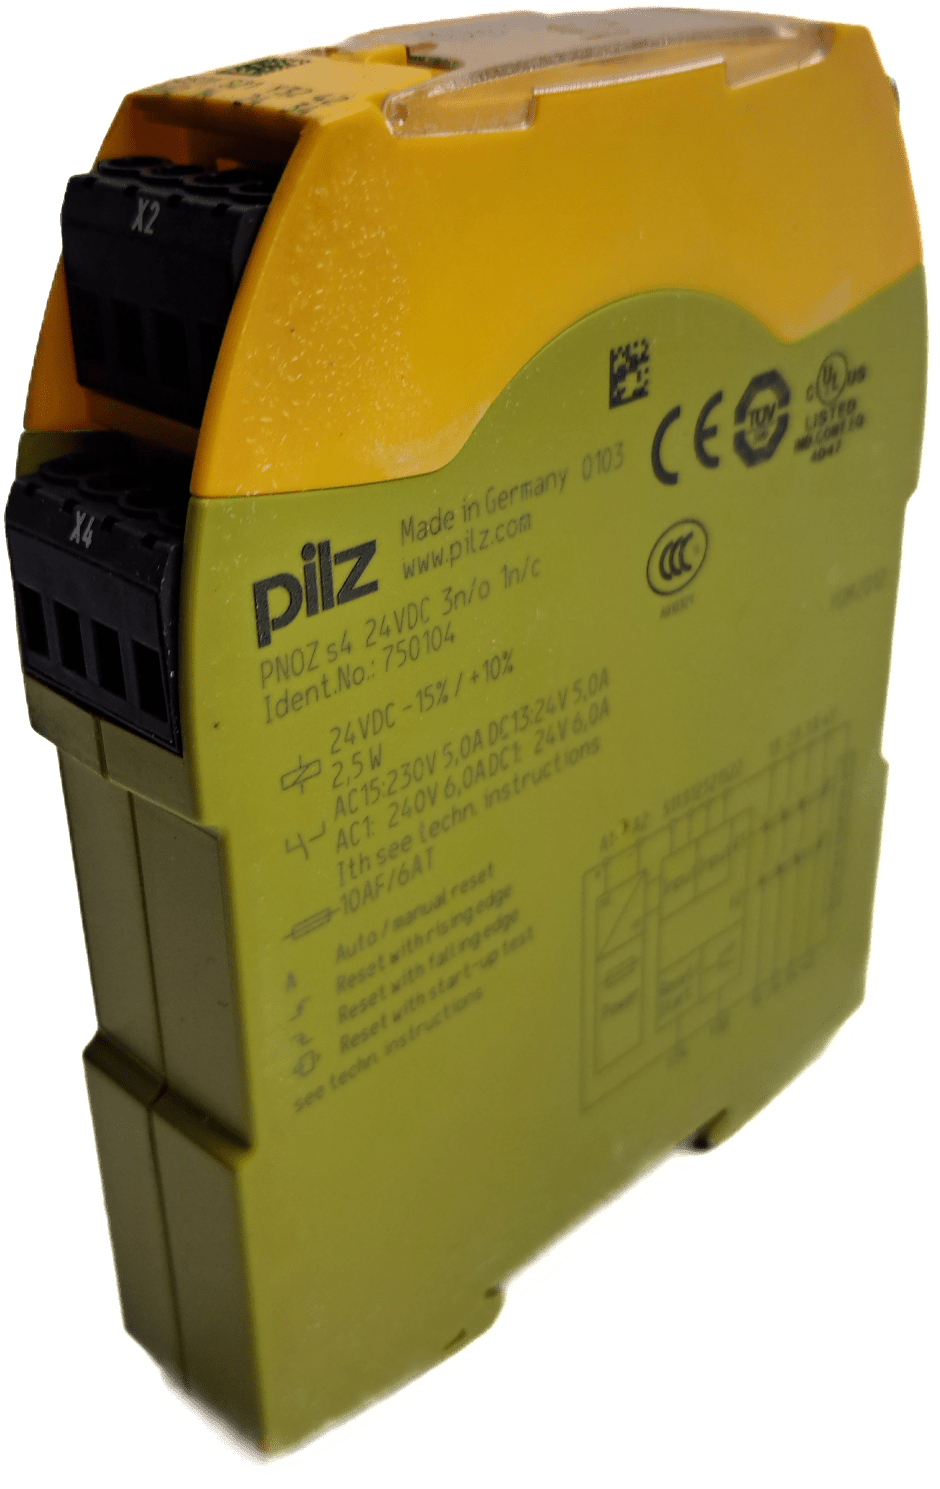 Pilz PNOZ s4 24VDC 3 n/o 1 n/c 750104 - #product_category# | Klenk Maschinenhandel